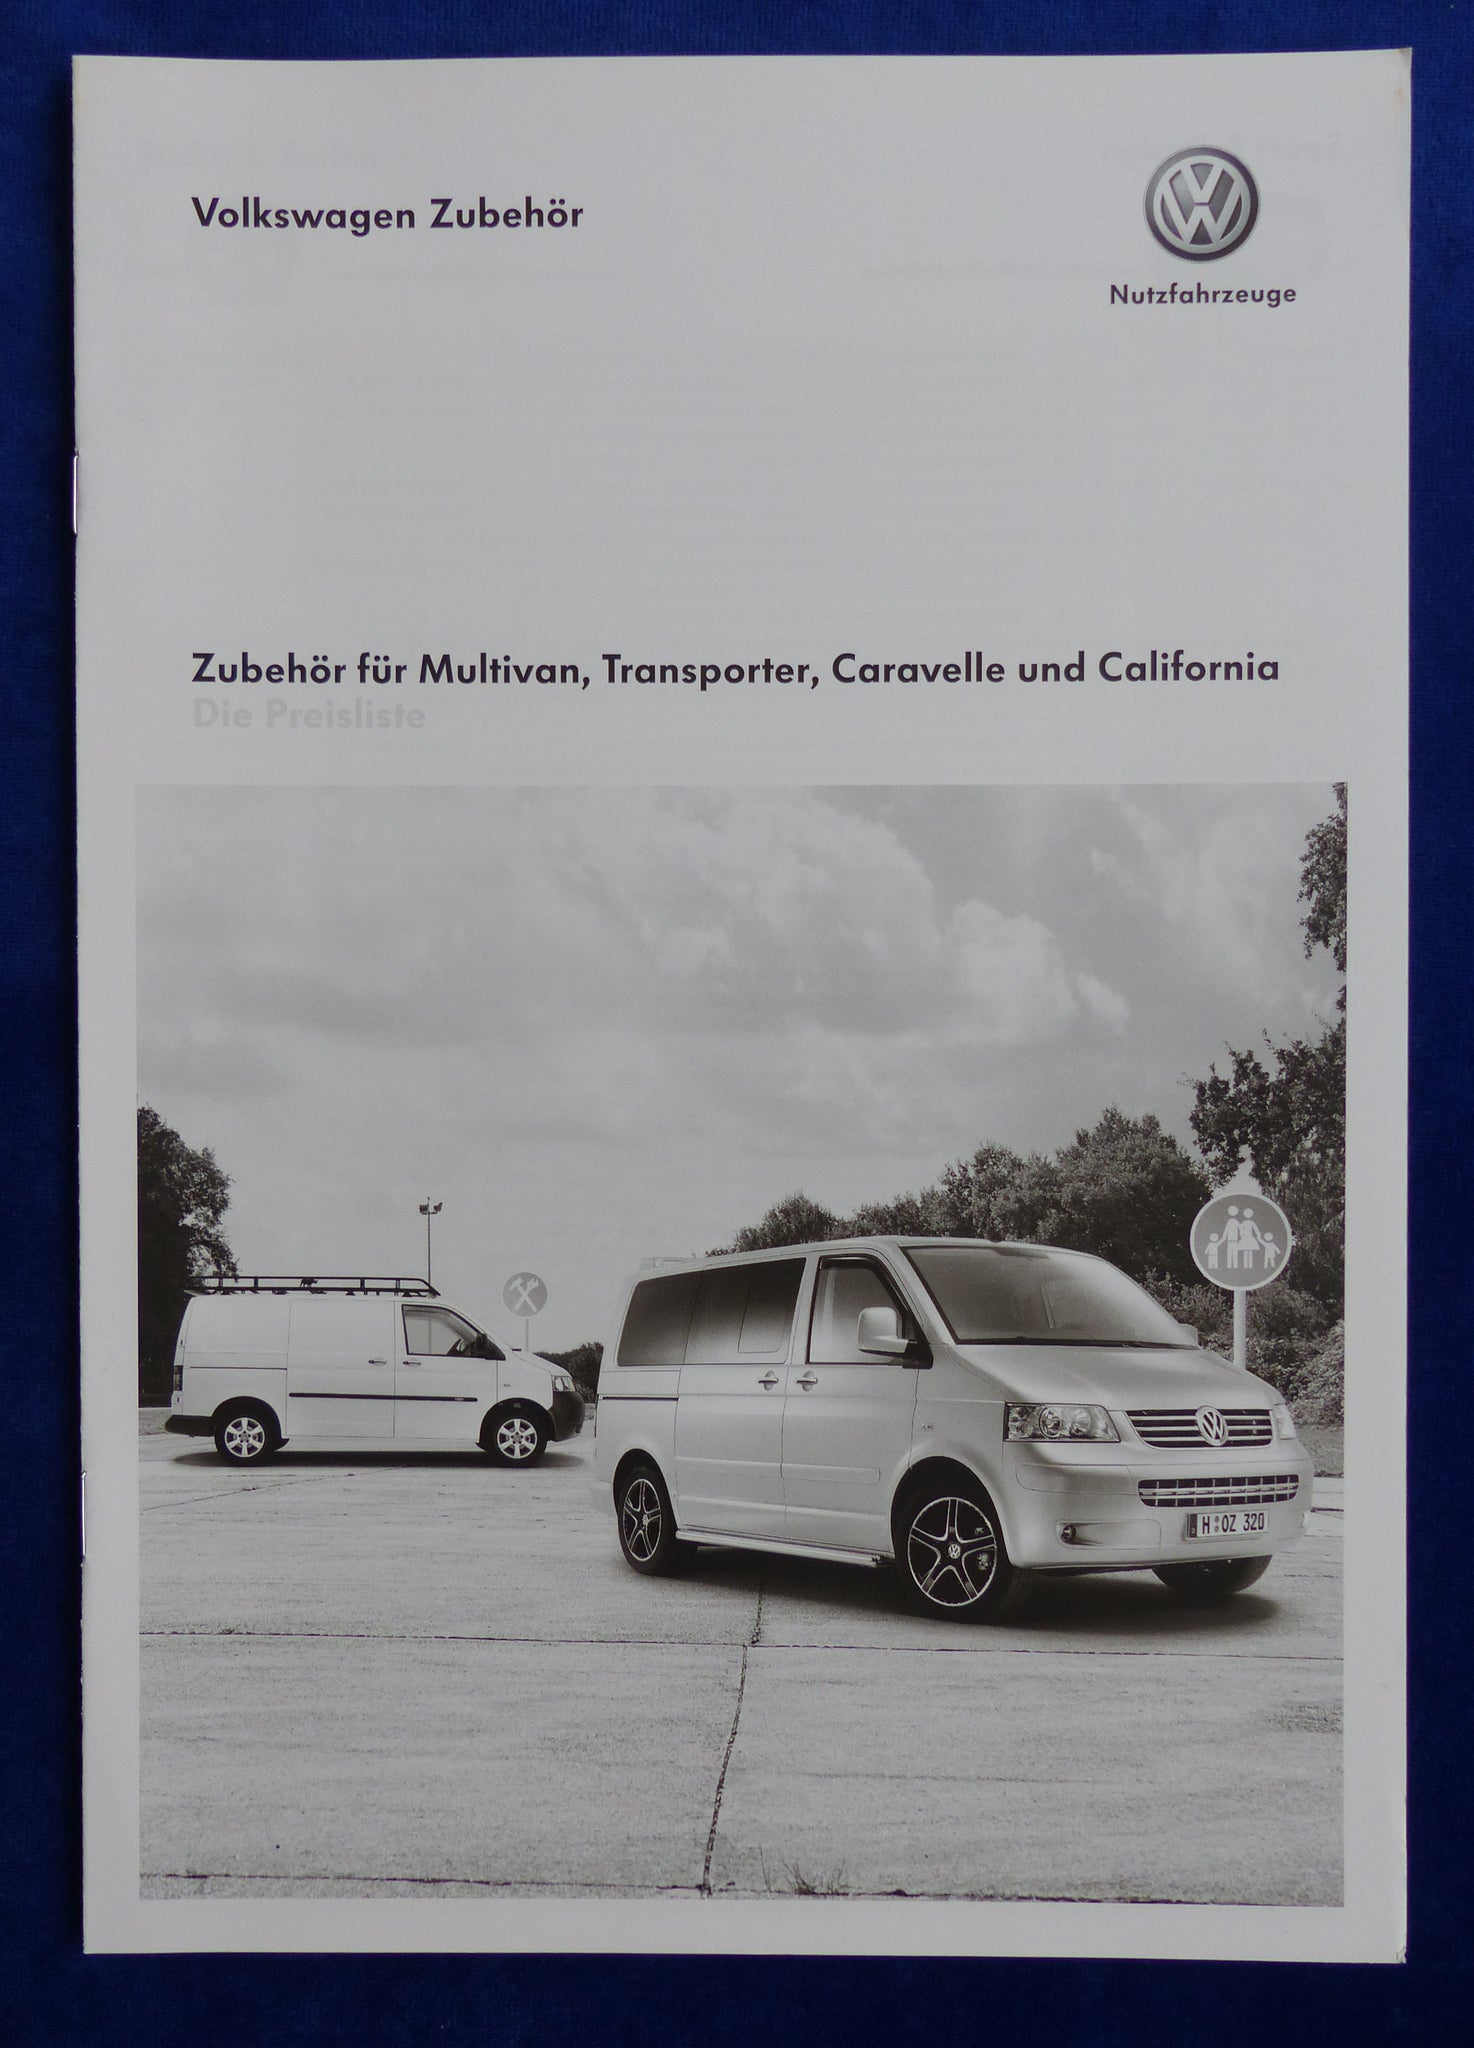 Volkswagen Zubehör Zubehör für Multivan, Transporter, Caravelle